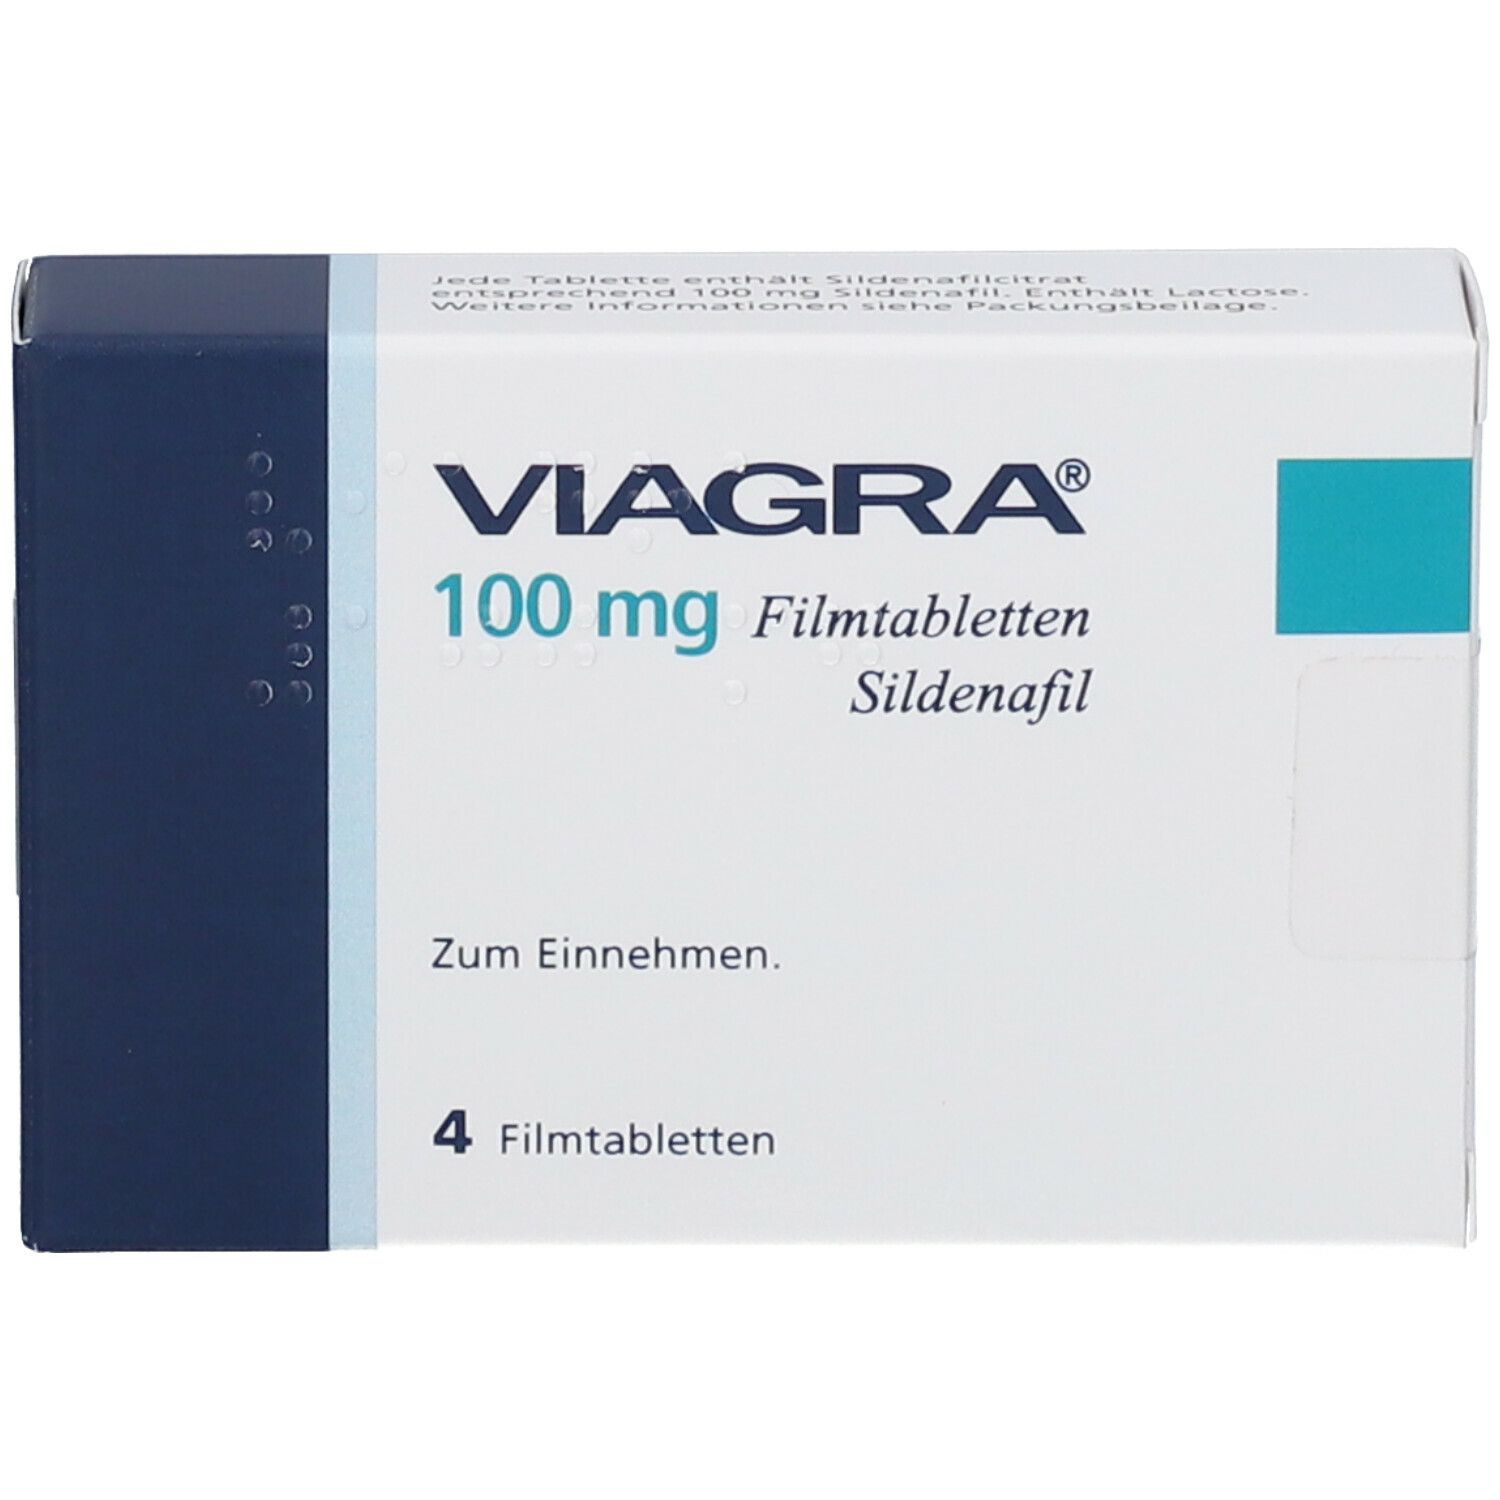 Viagra 100 mg Filmtabletten, 4 St. online kaufen